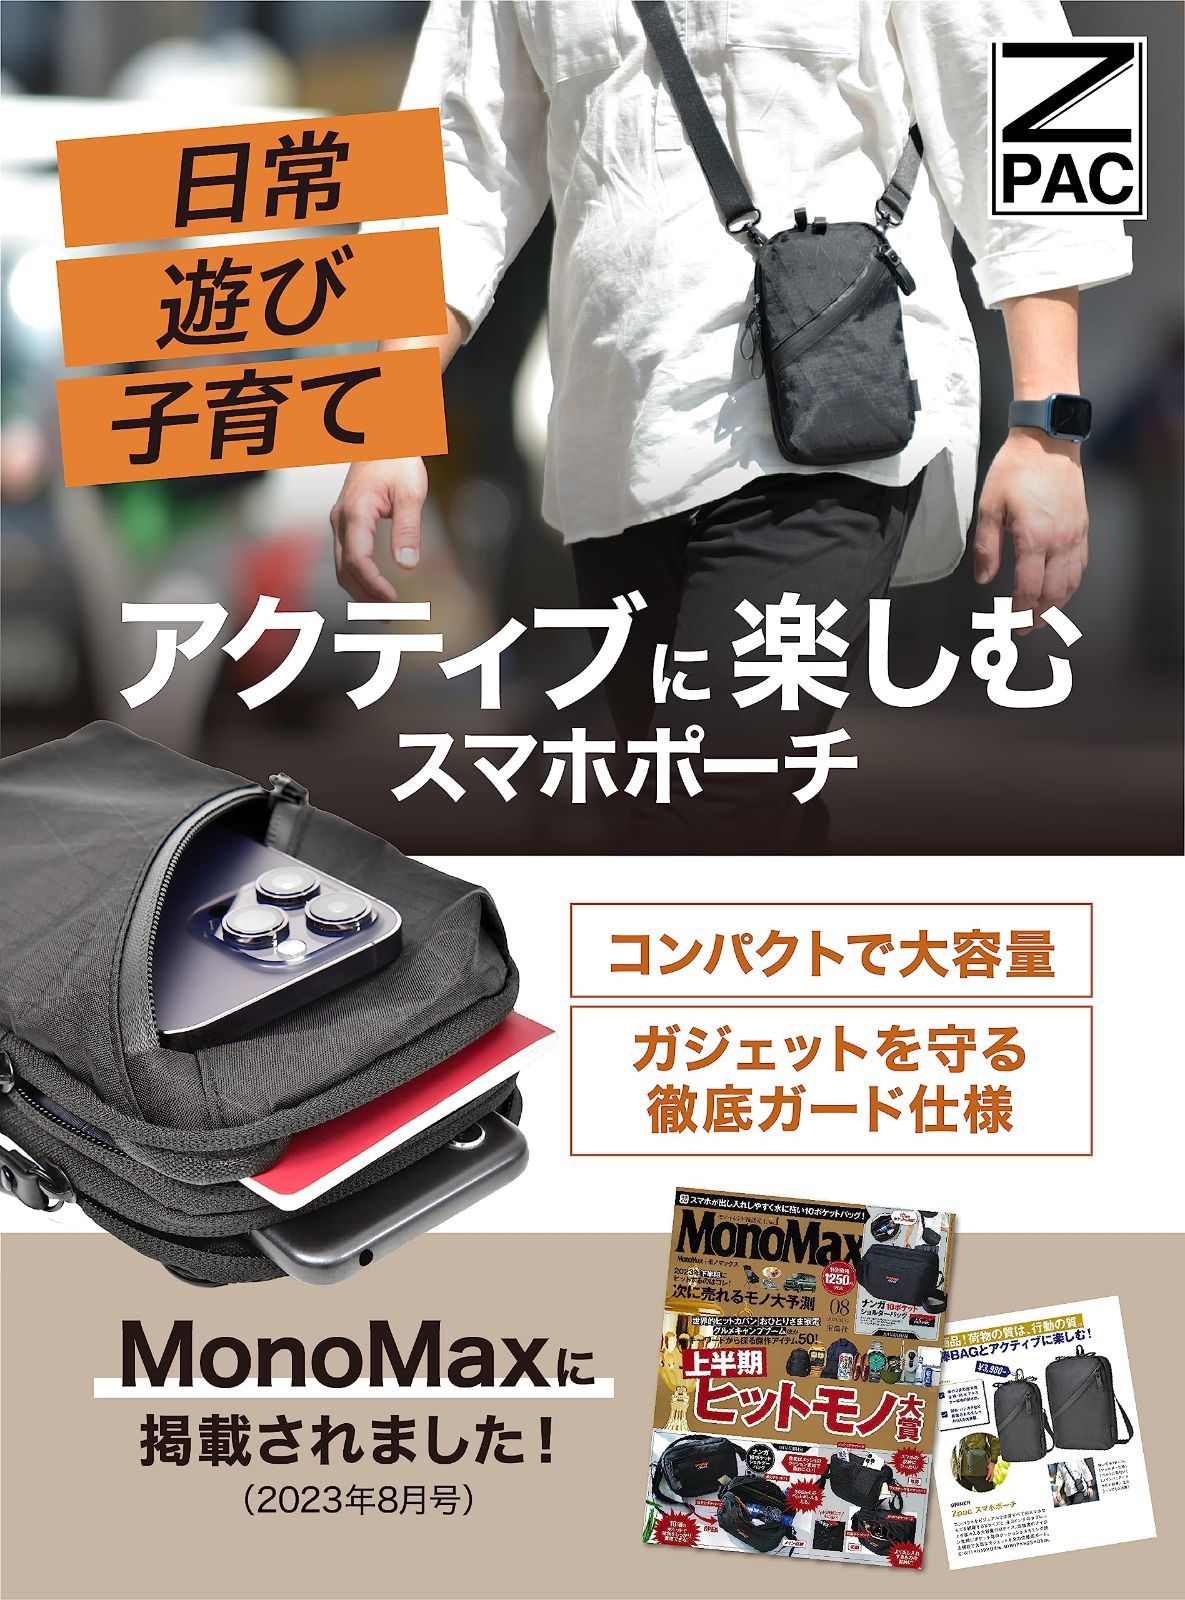 MonoMax2023年11月号